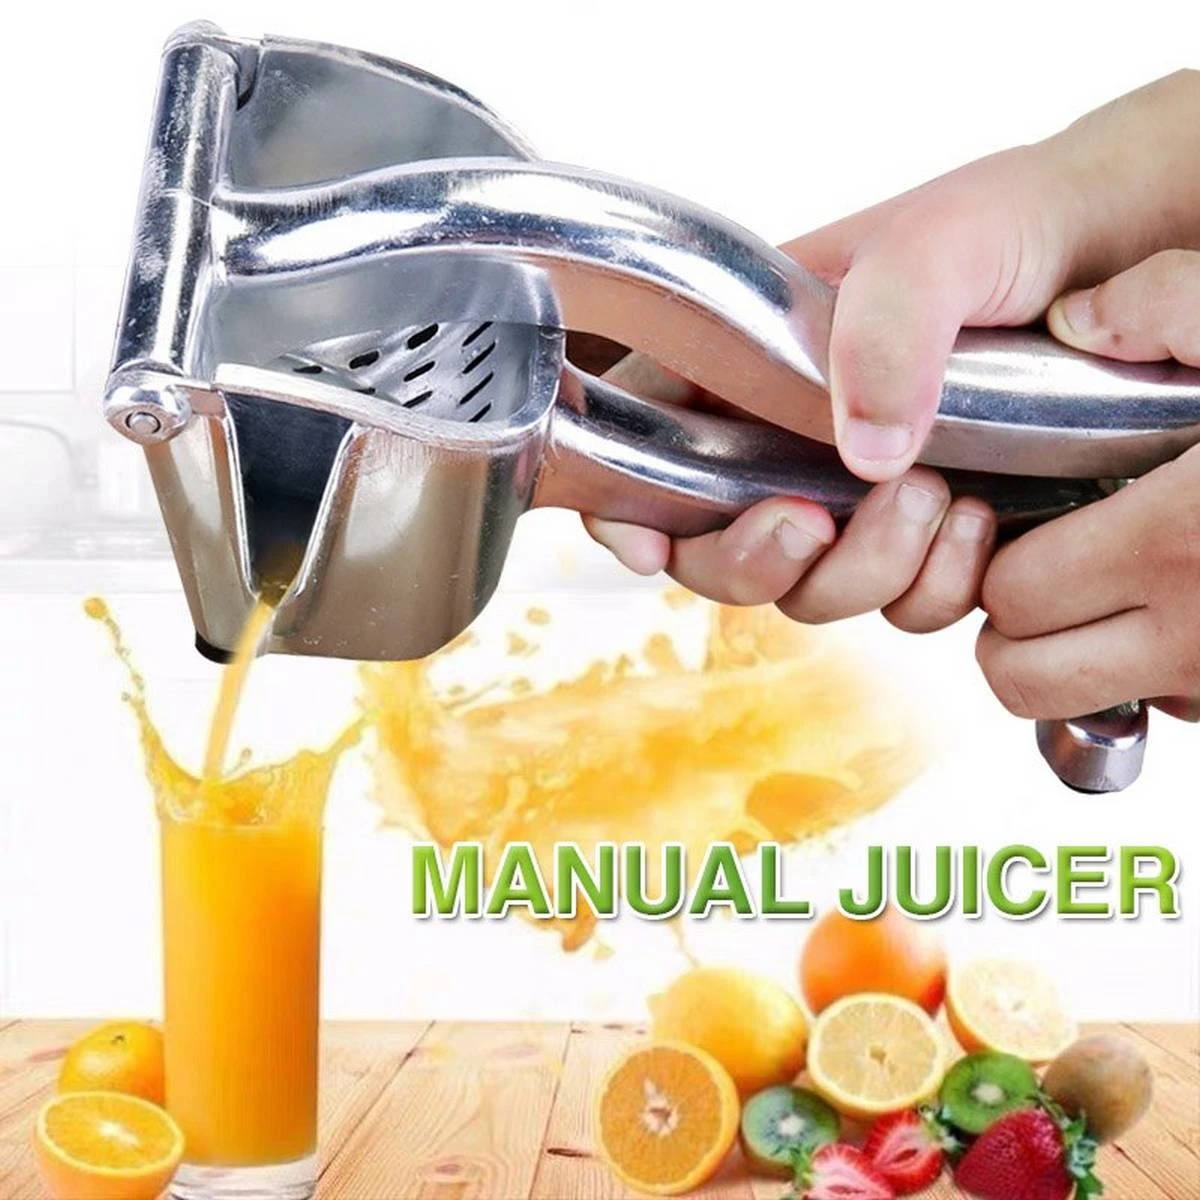 Manuel Hand Juicer (Juice squeezer)